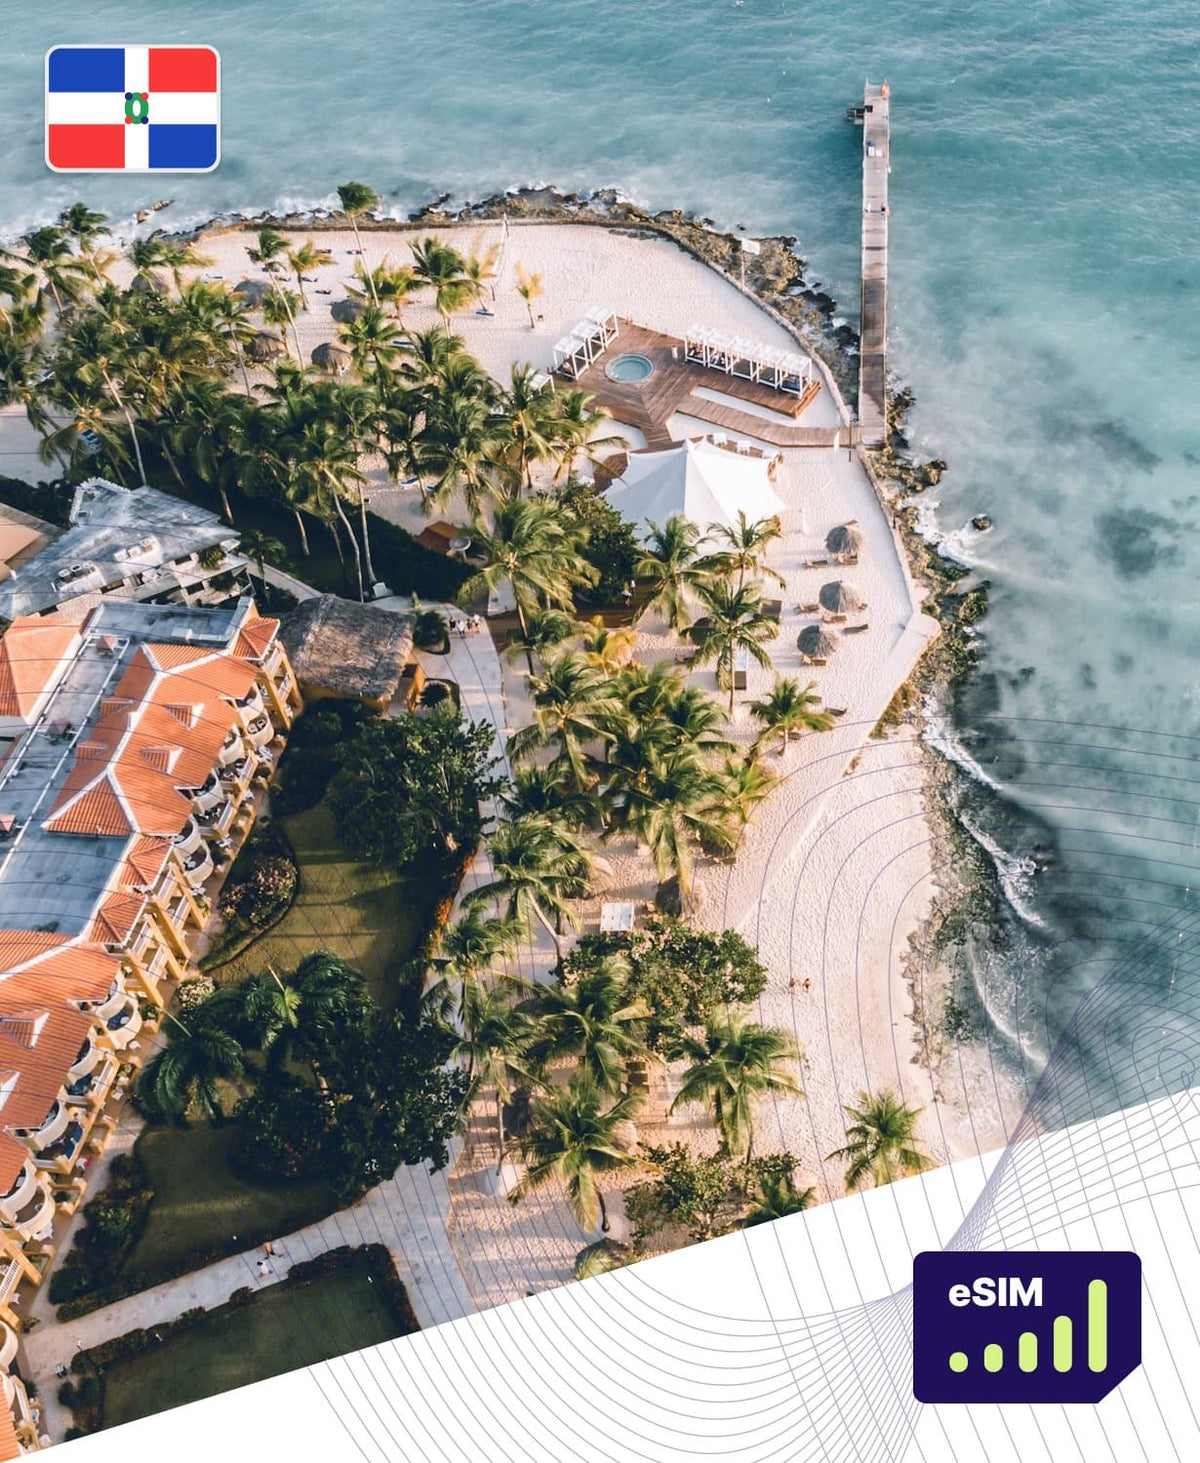 Dominican Republic eSIM Plans - Roamight